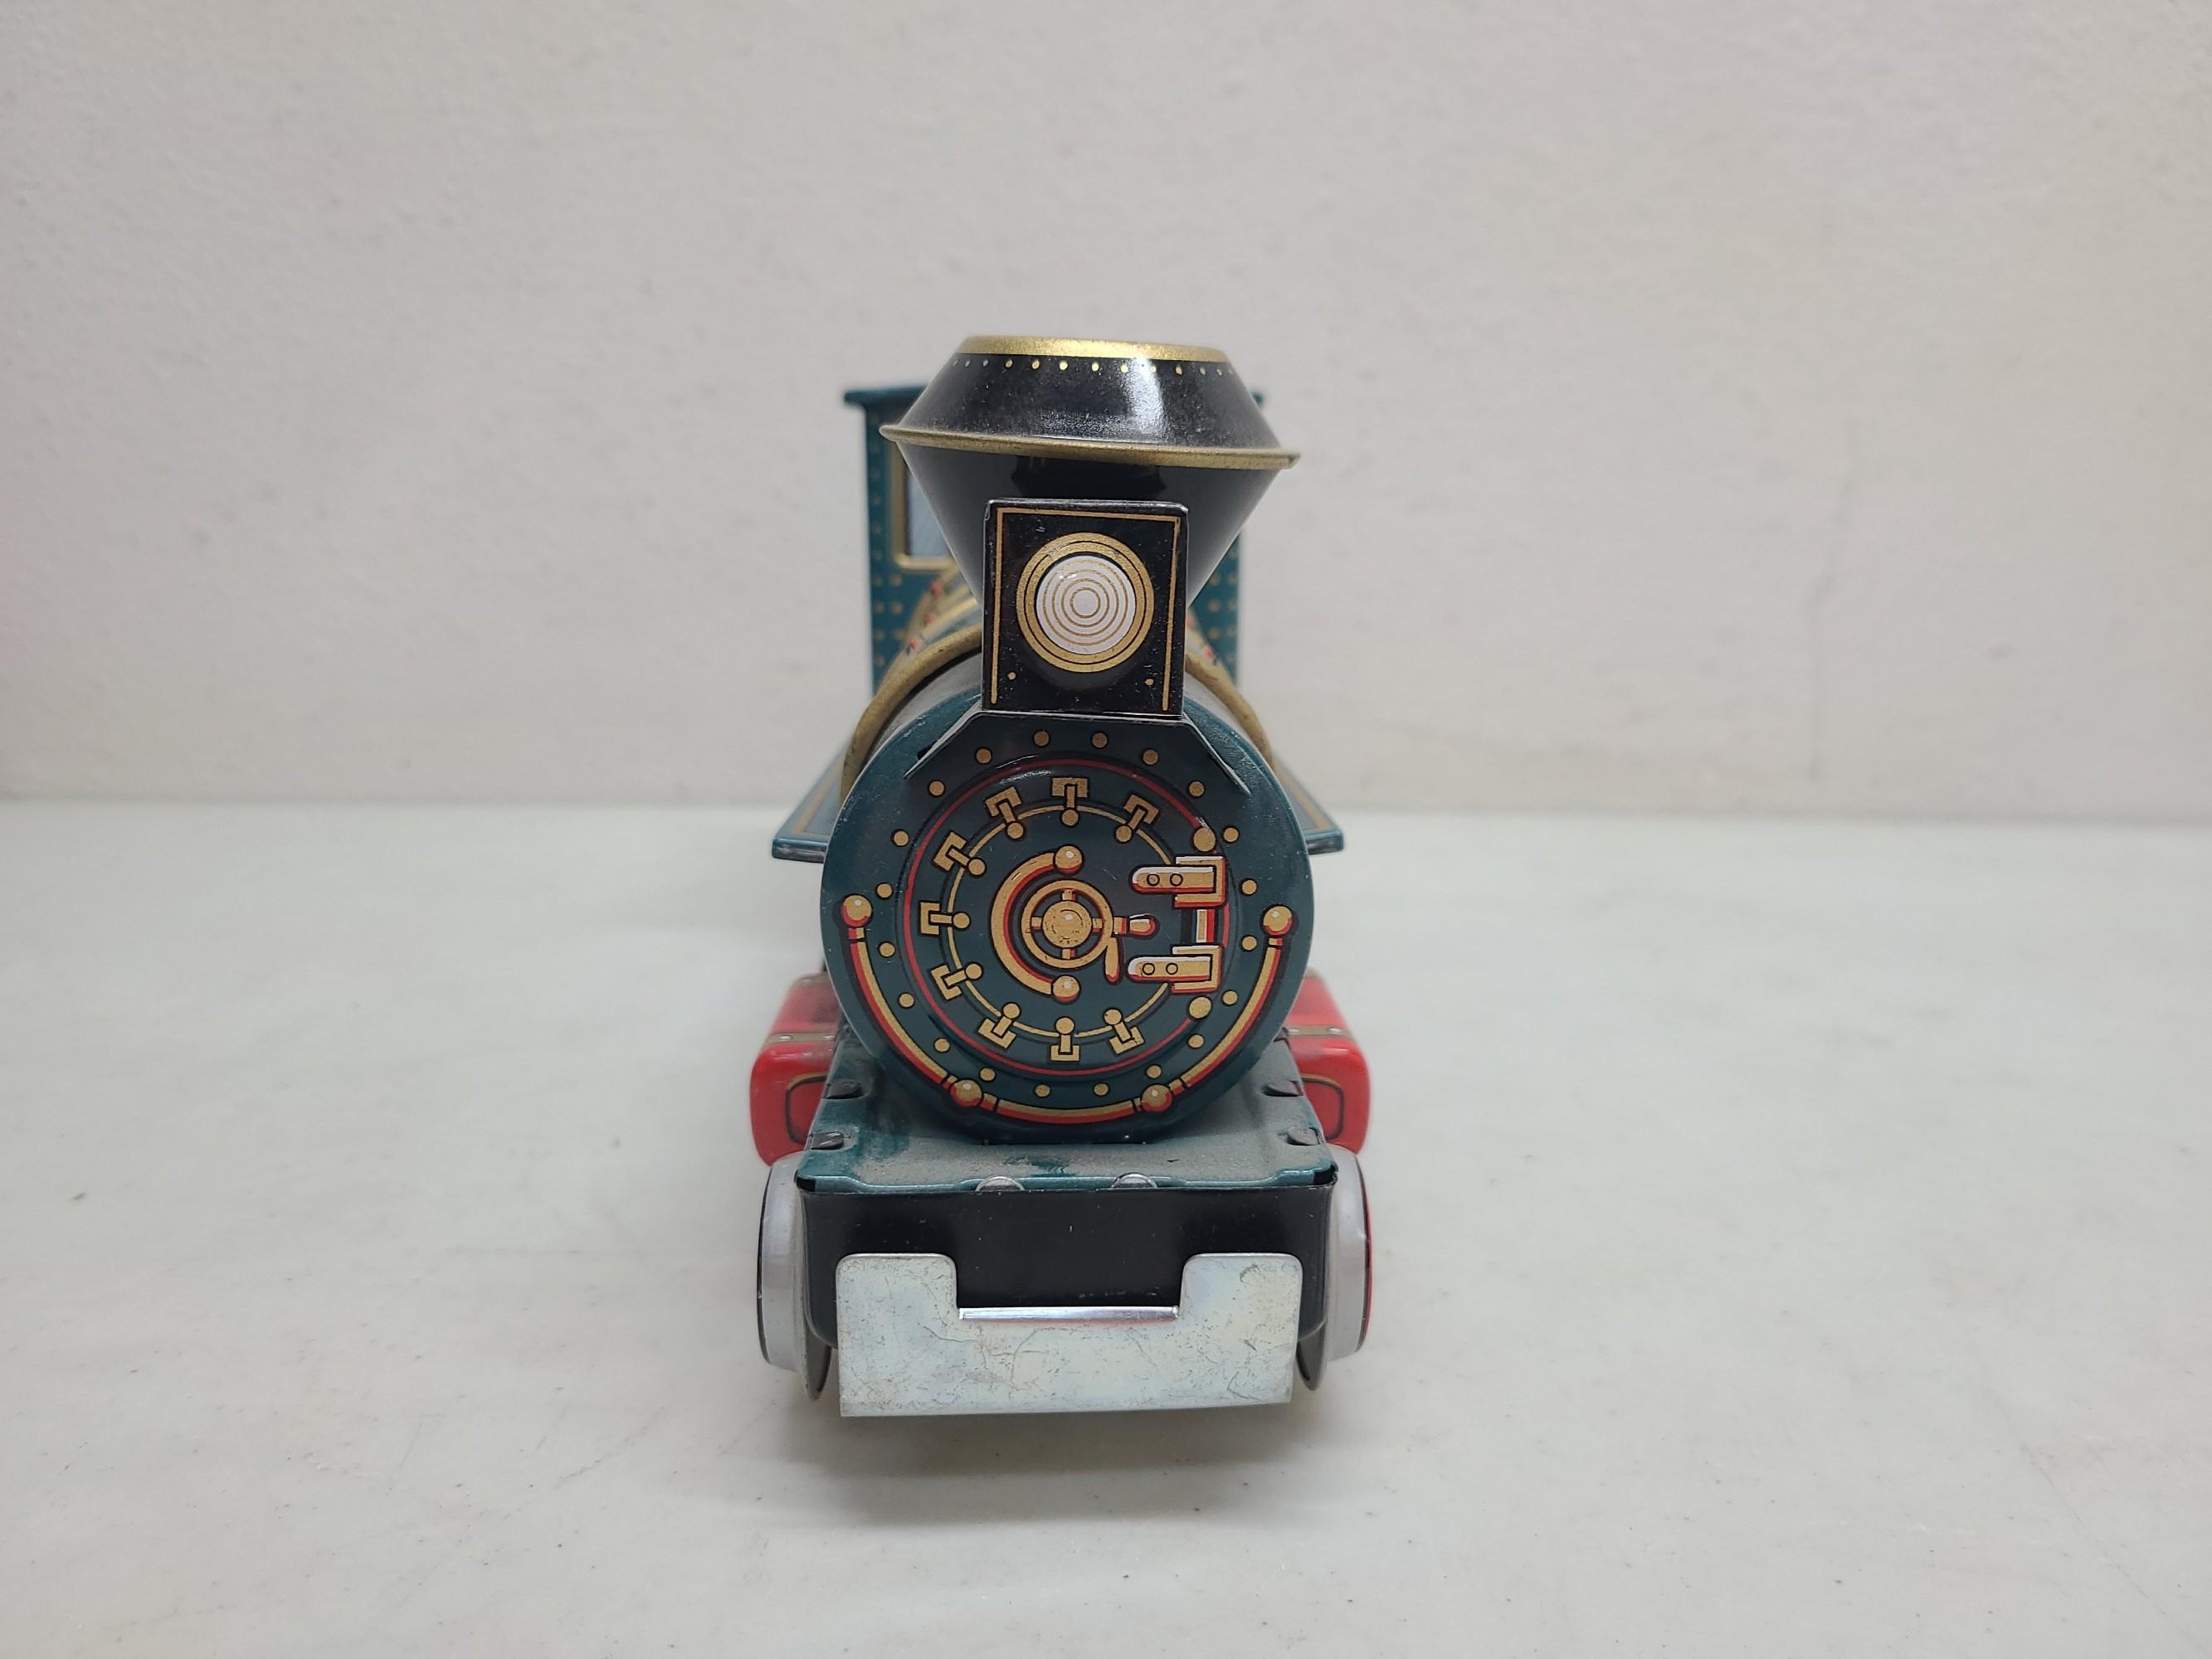 TM Toys Western Train Engine